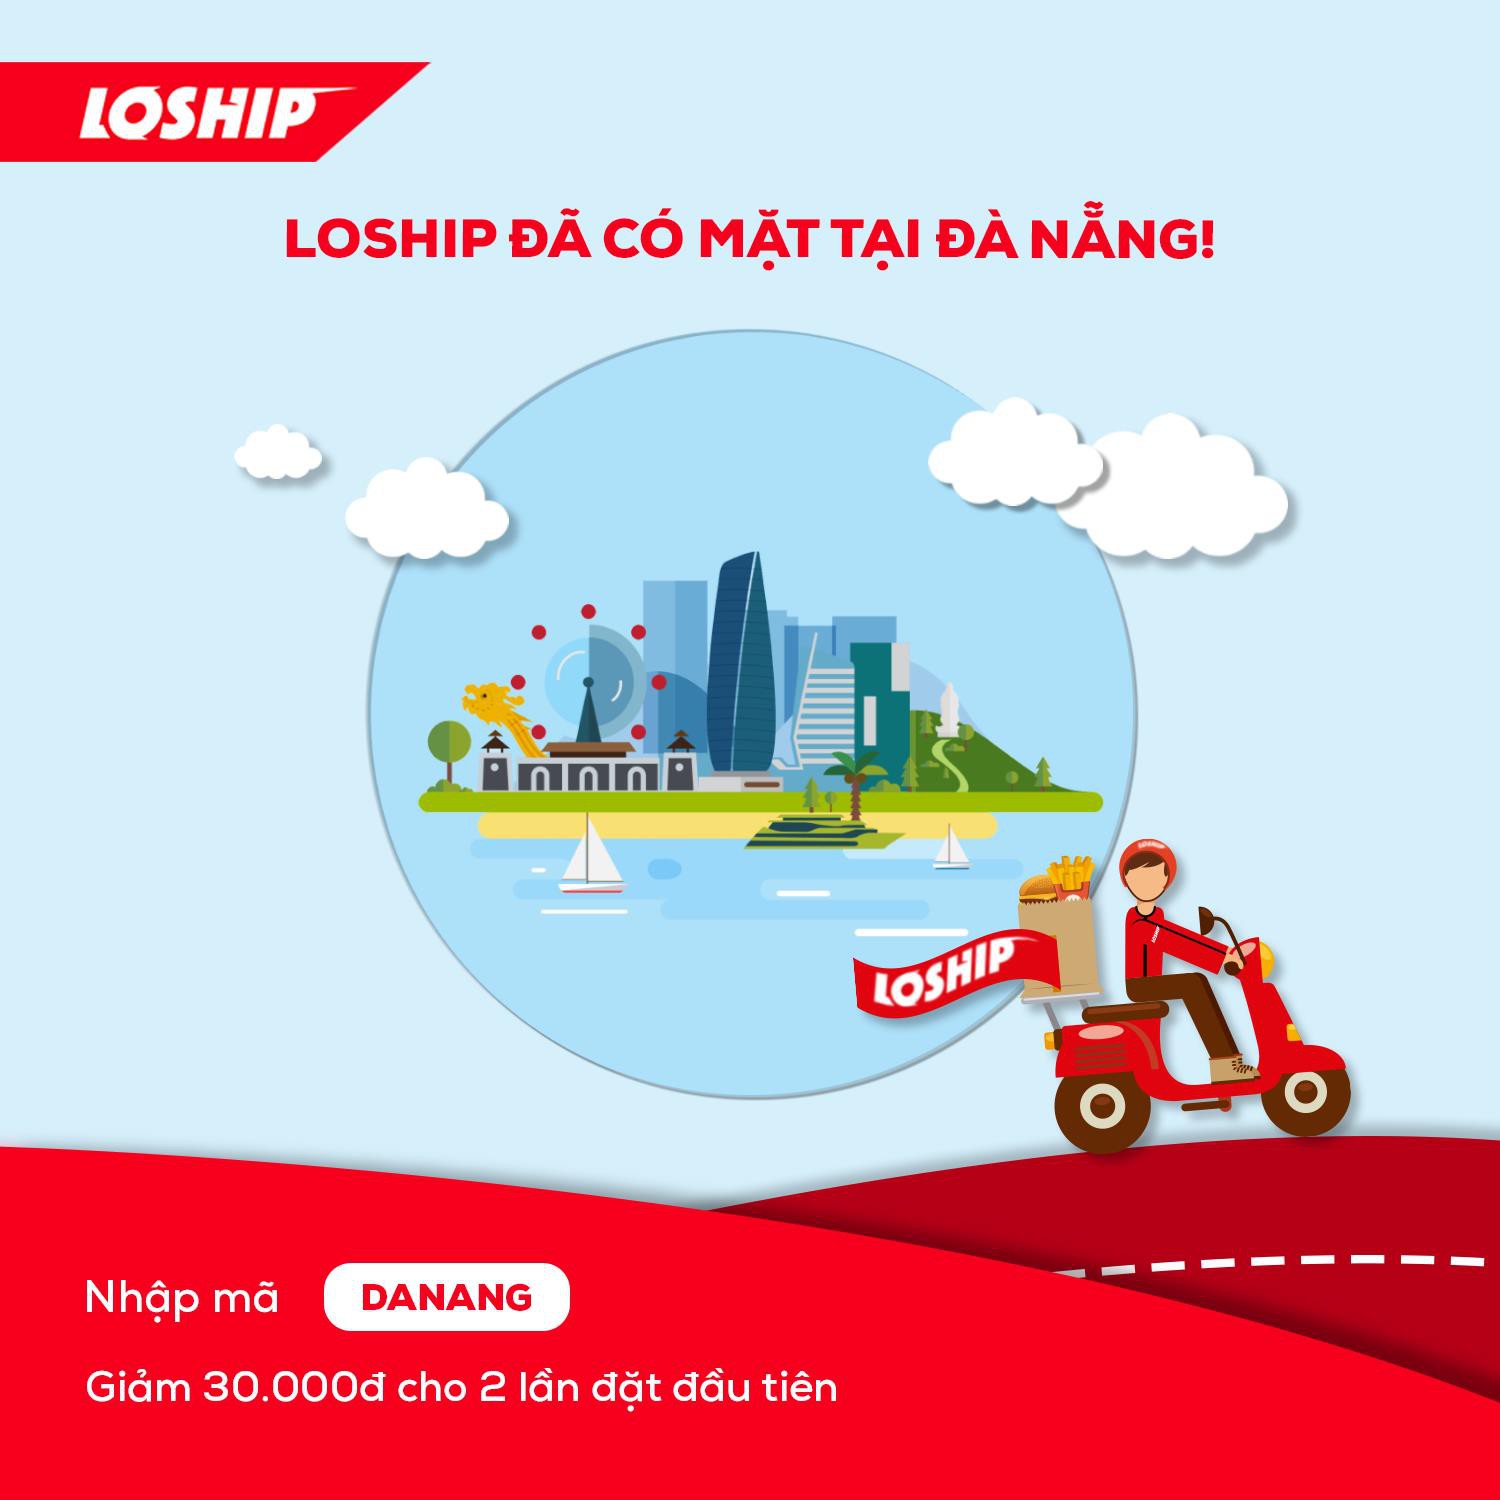 Lozi ra mắt dịch vụ giao đồ ăn Loship tại Đà Nẵng - Ảnh 2.